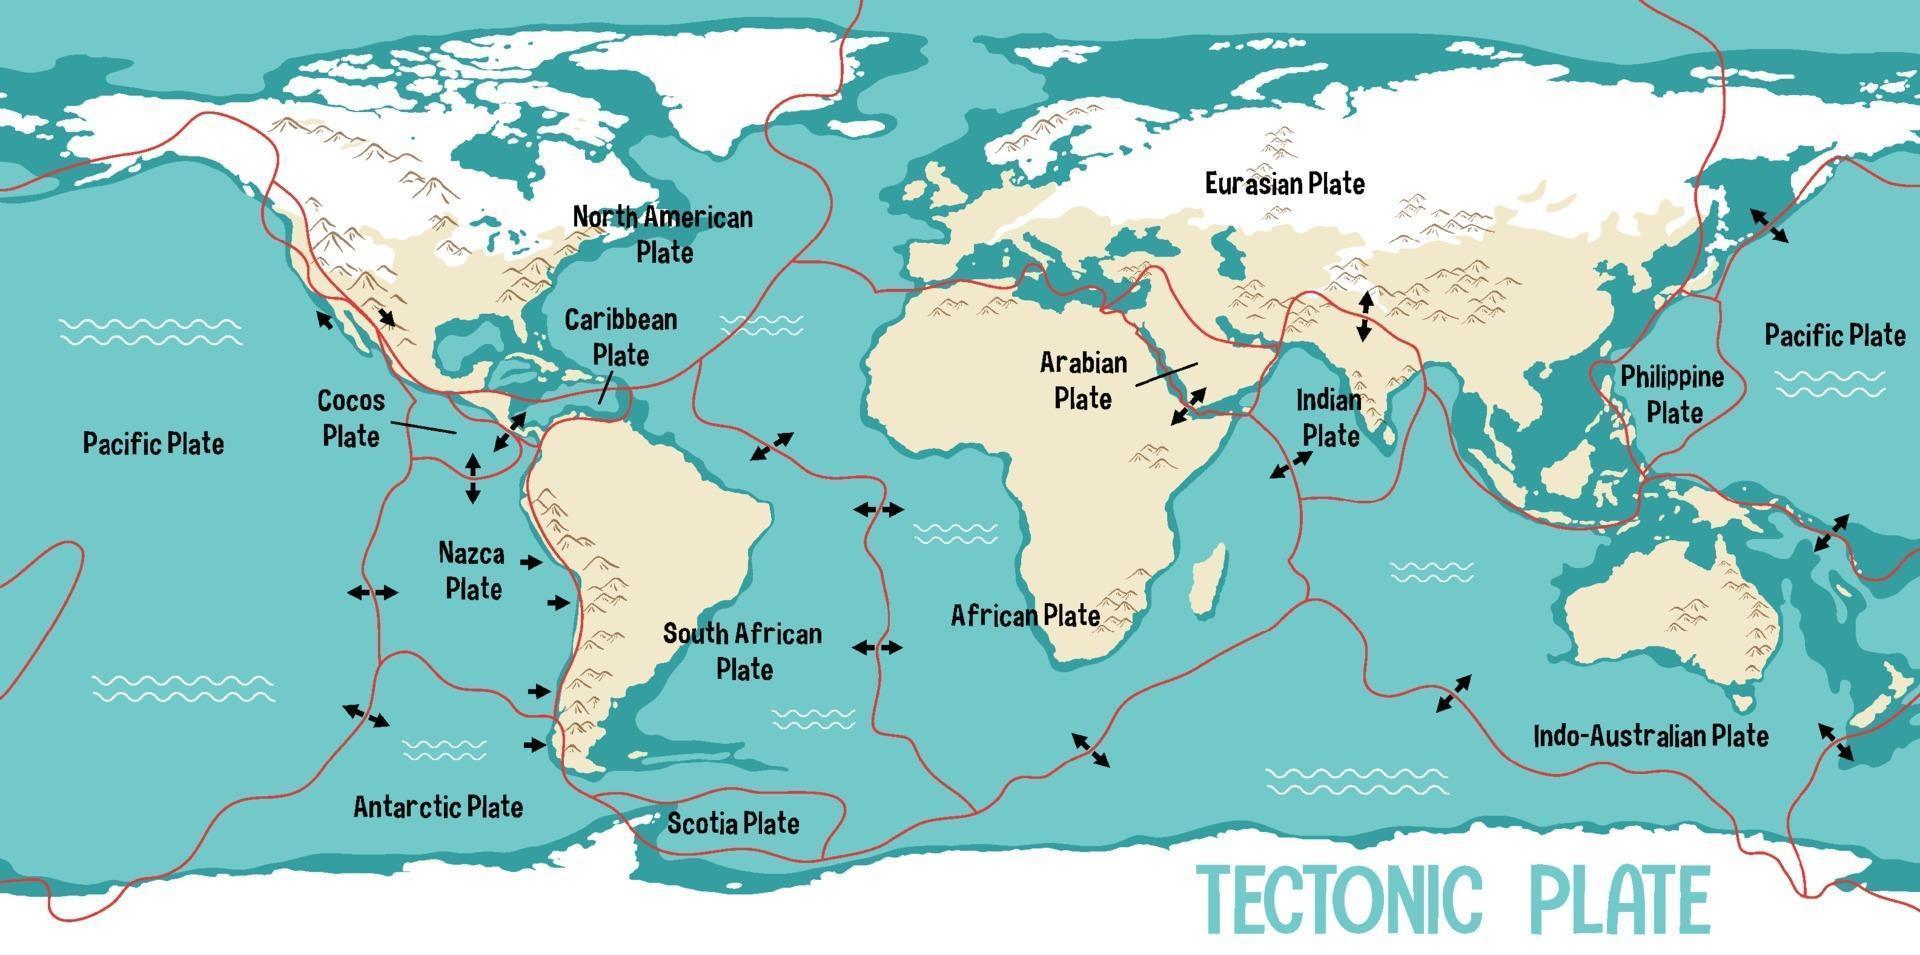 mapa-múndi mostrando os limites das placas tectônicas vetor